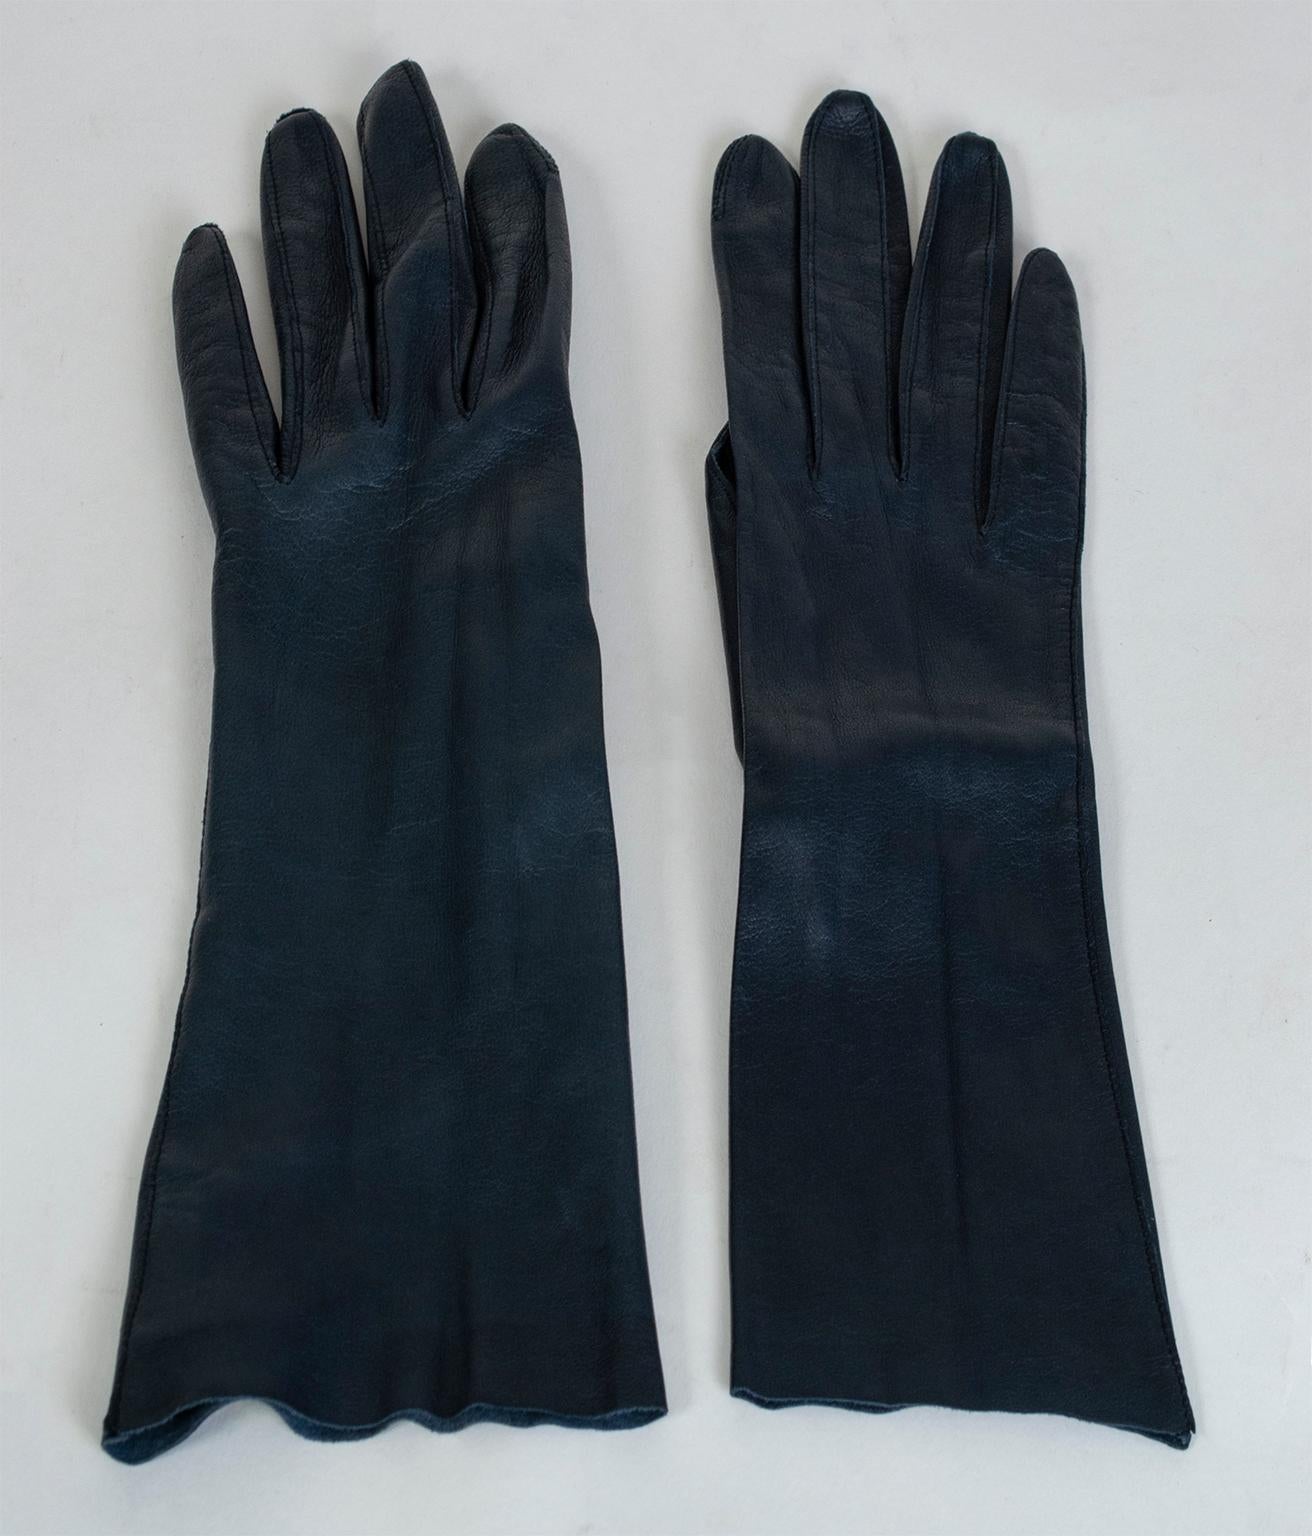 kidskin leather gloves